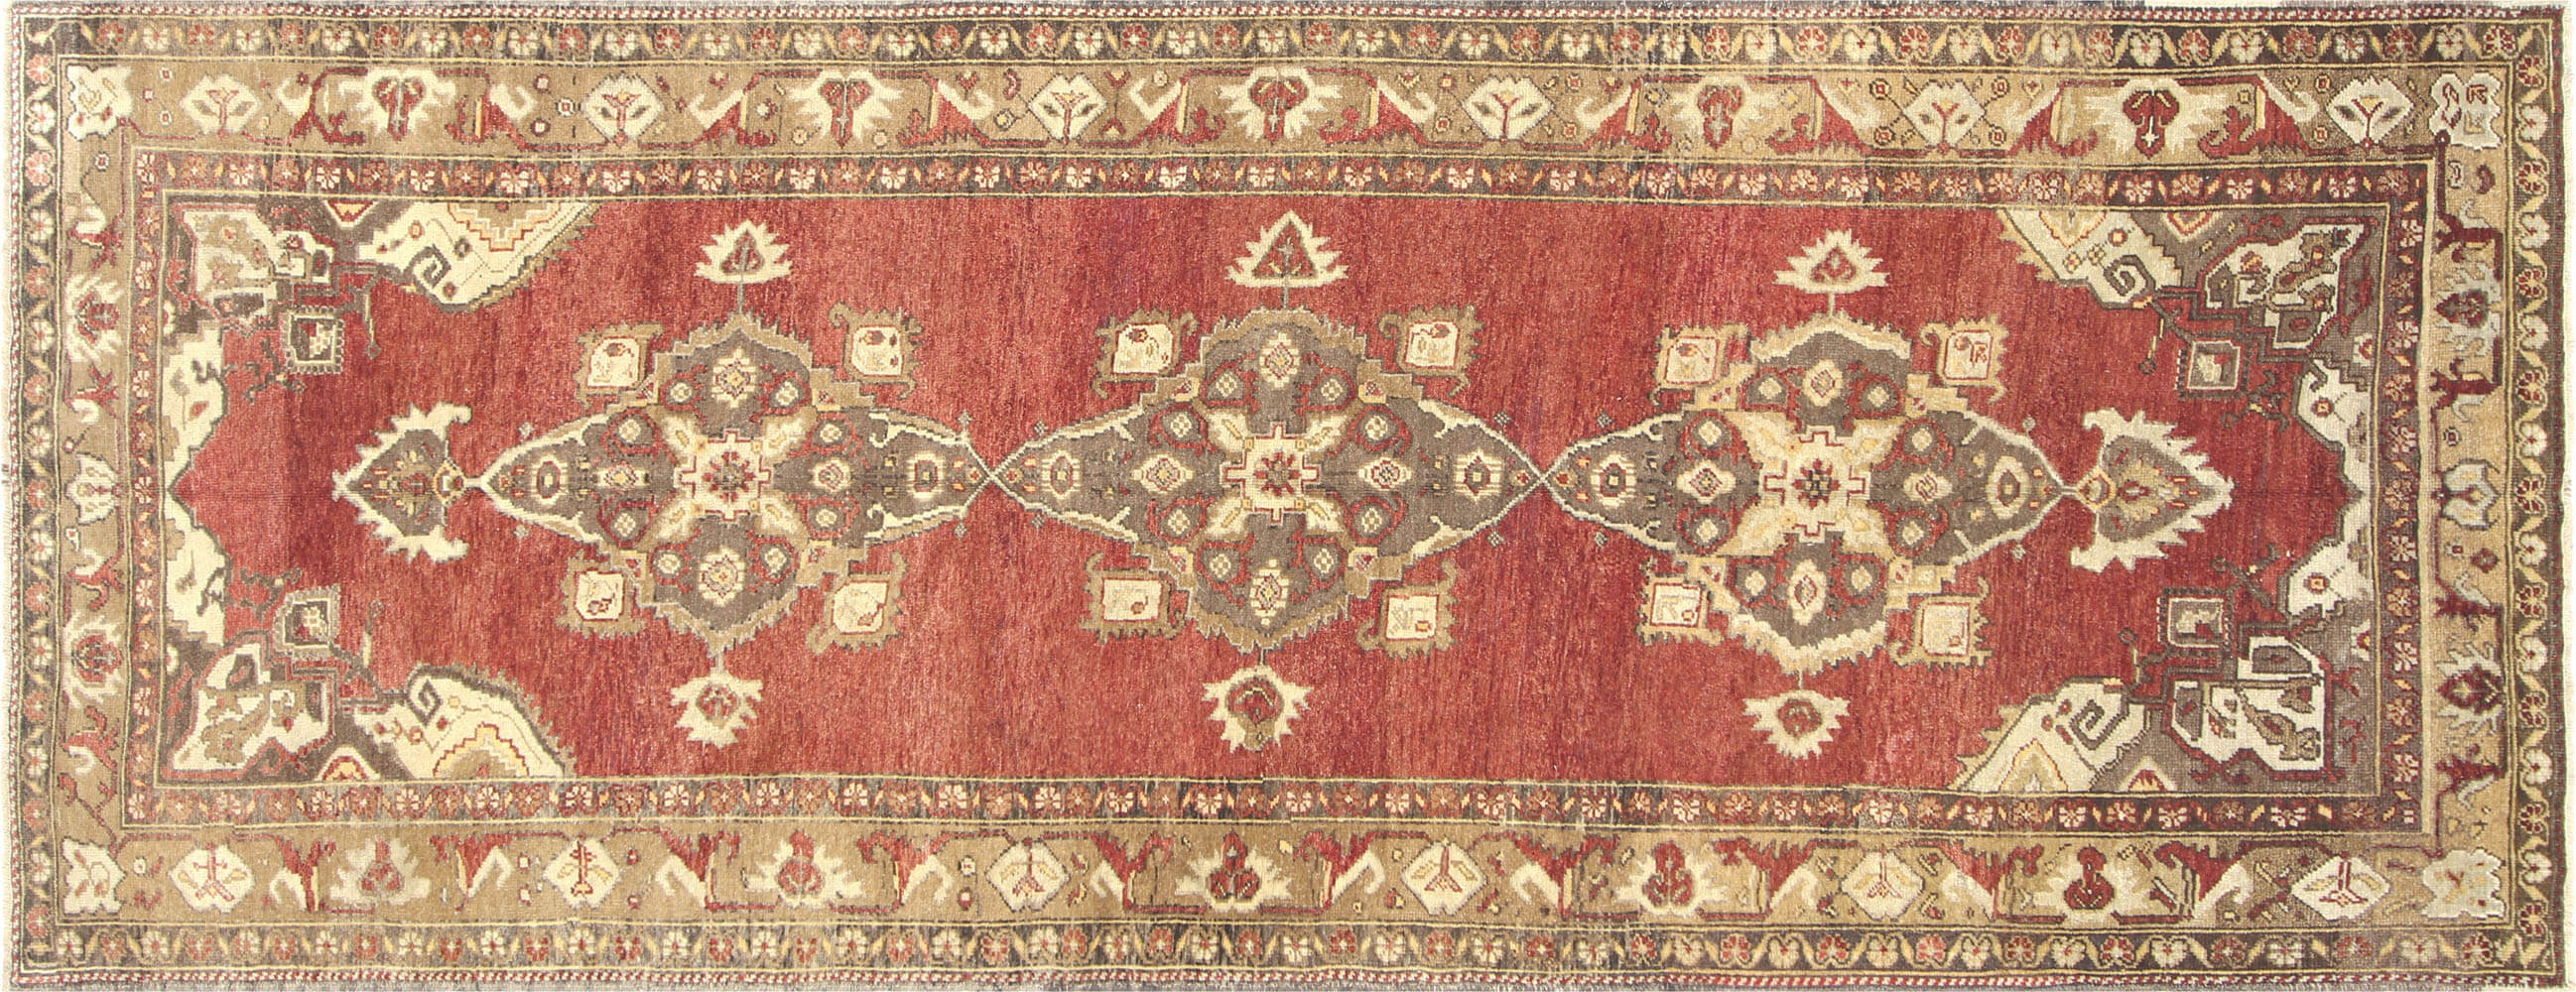 Vintage Turkish Oushak Carpet - 4'10" x 12'8"